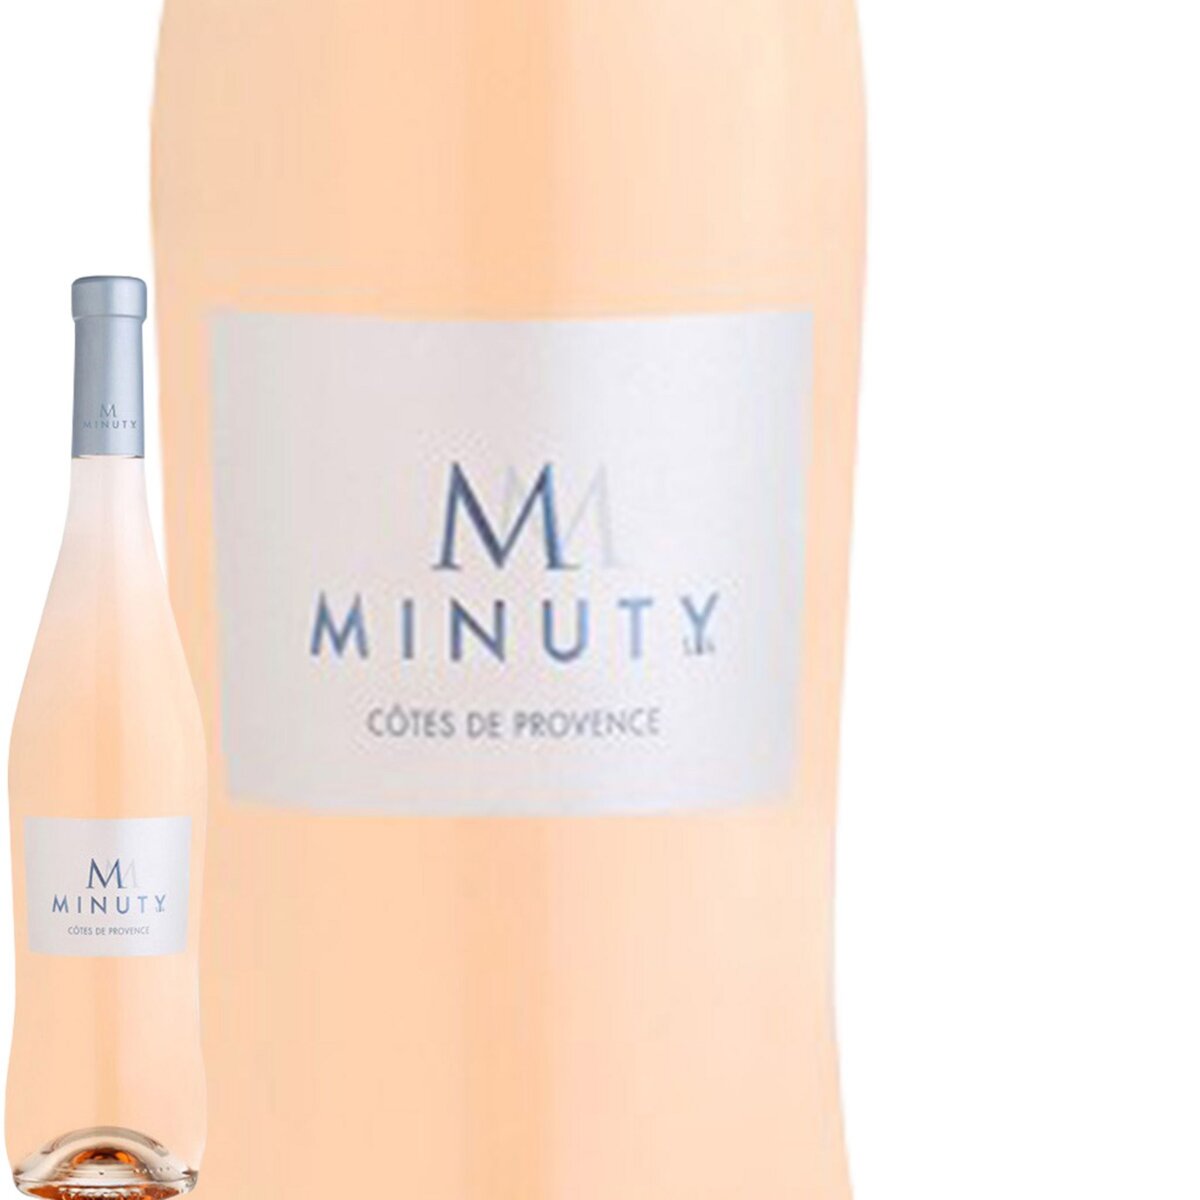 M de Minuty Côtes de Provence Rosé 2016